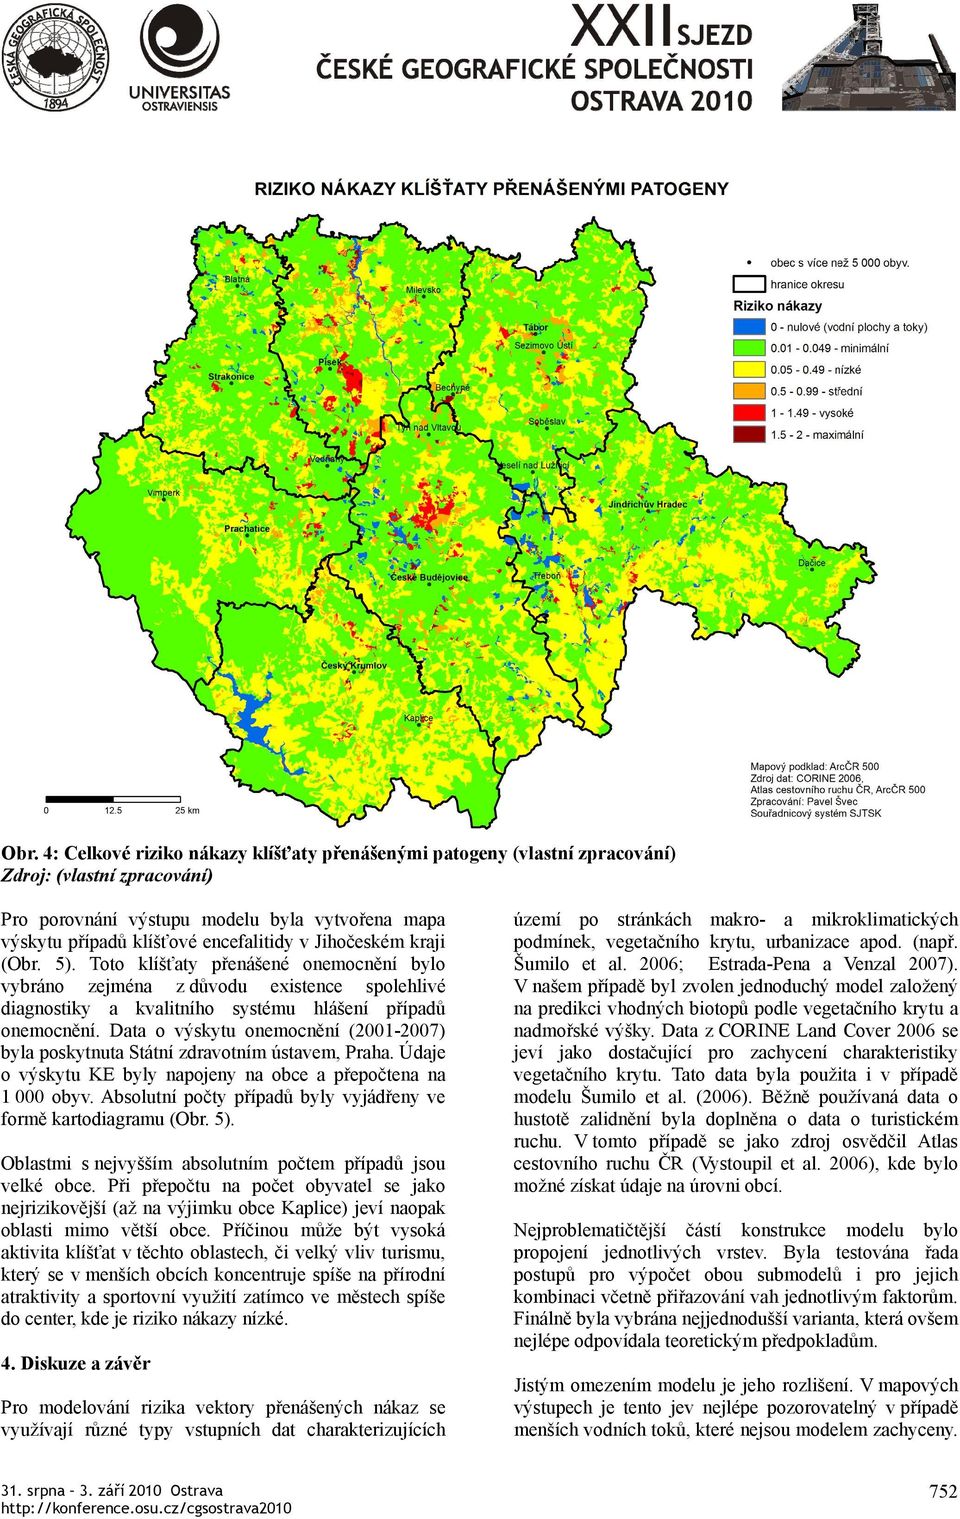 Data o výskytu onemocnění (2001-2007) byla poskytnuta Státní zdravotním ústavem, Praha. Údaje o výskytu KE byly napojeny na obce a přepočtena na 1 000 obyv.